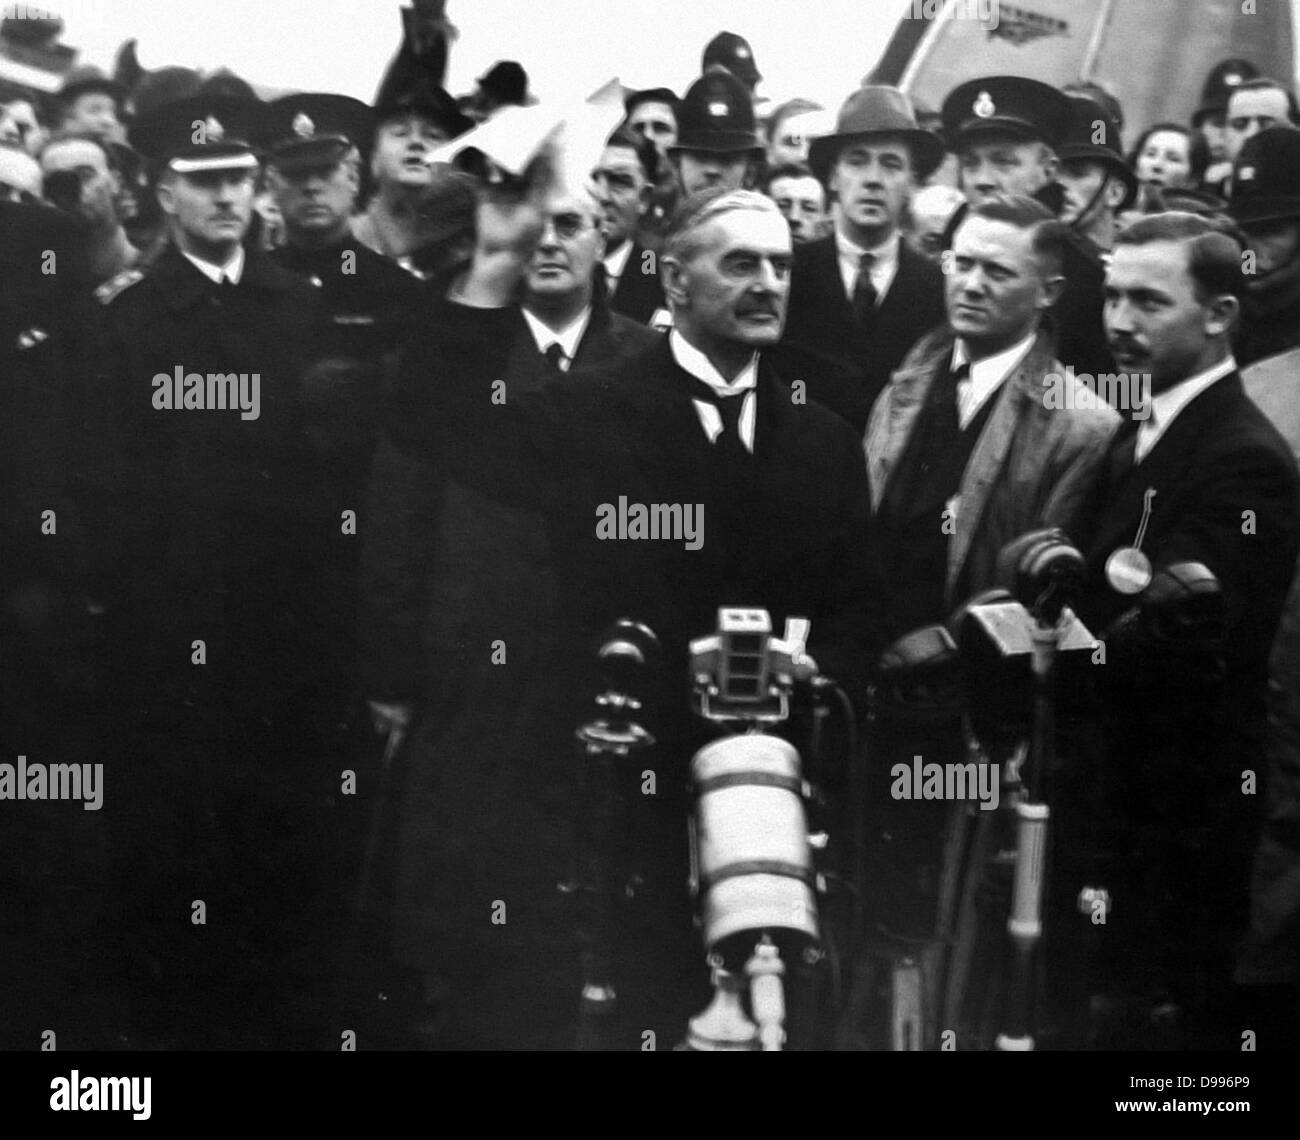 Chamberlain Rückkehr aus München. Arthur Neville Chamberlain (1869-1940), britischer konservativer Politiker, Premierminister des Vereinigten Königreichs von 1937 bis Mai 1940. Für seine ausgleichenden Außenpolitik bekannt, insbesondere für seine Unterzeichnung des Münchner Abkommens im Jahre 1938, ohne Gegentor das Sudetenland Region der Tschechoslowakei zu NS-Deutschland. Stockfoto